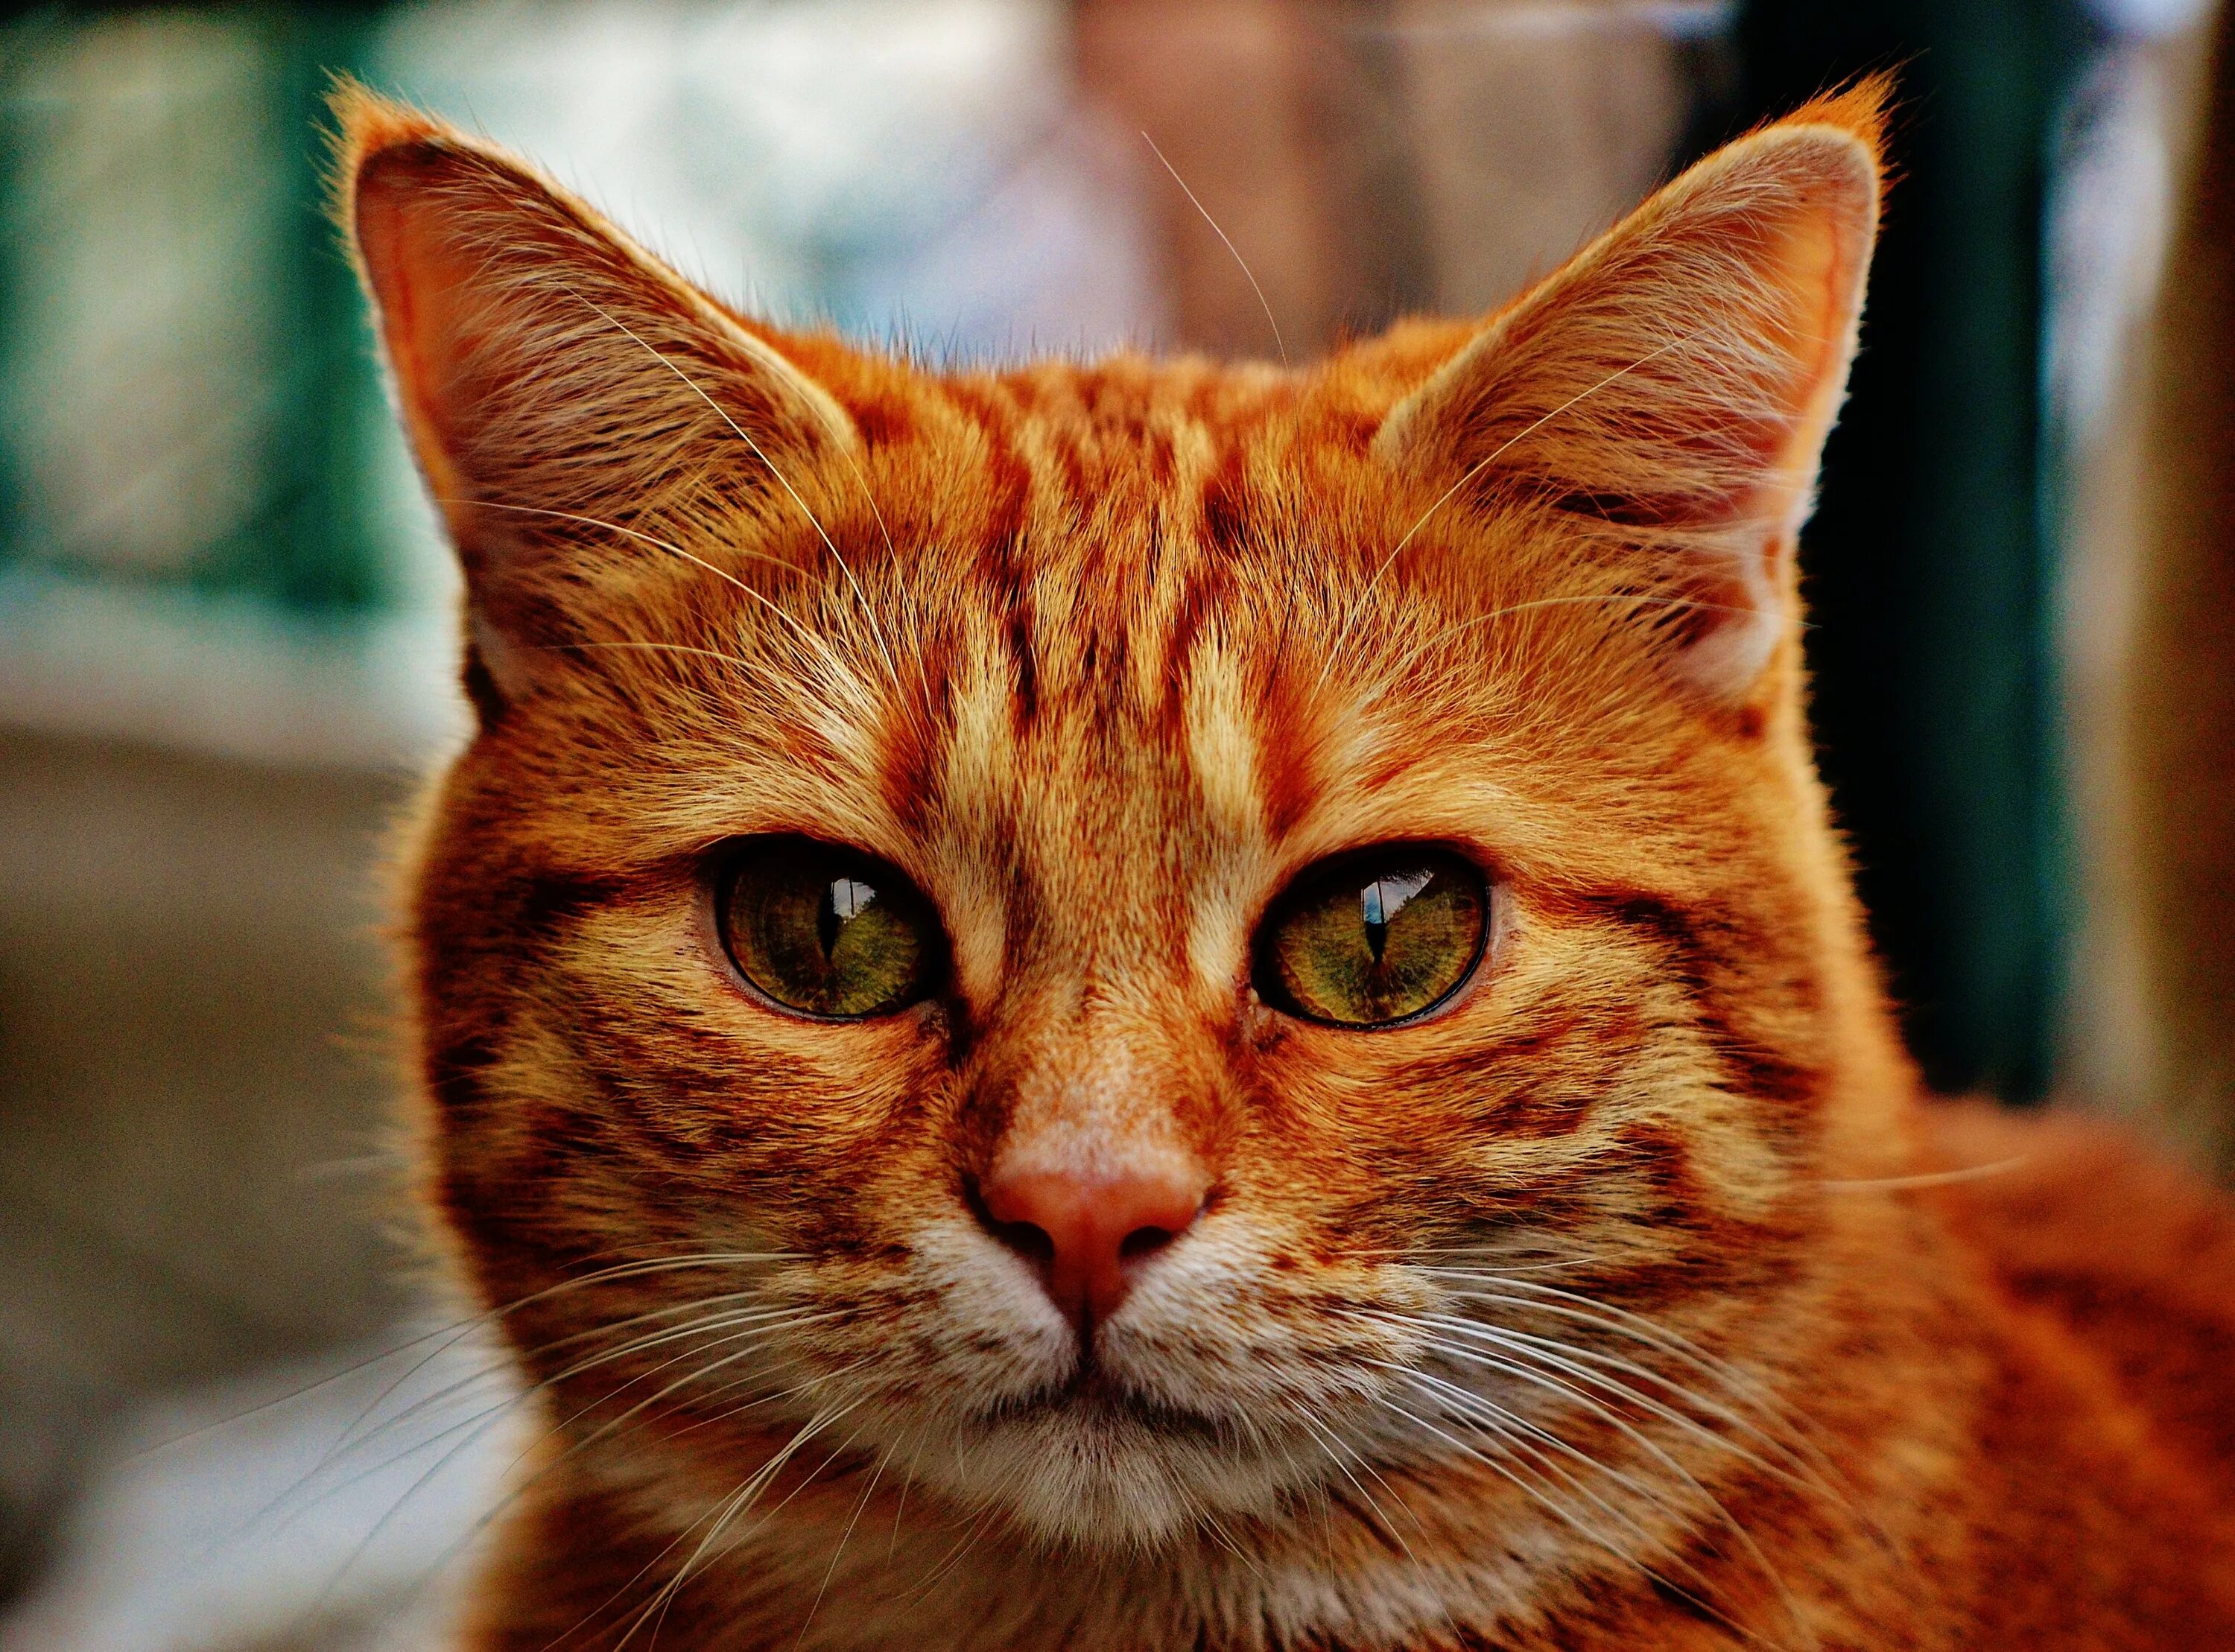 Cats me red. Европейский короткошерстный кот рыжий. Рыжий котик. Морда рыжего кота. Рыжая кошка морда.